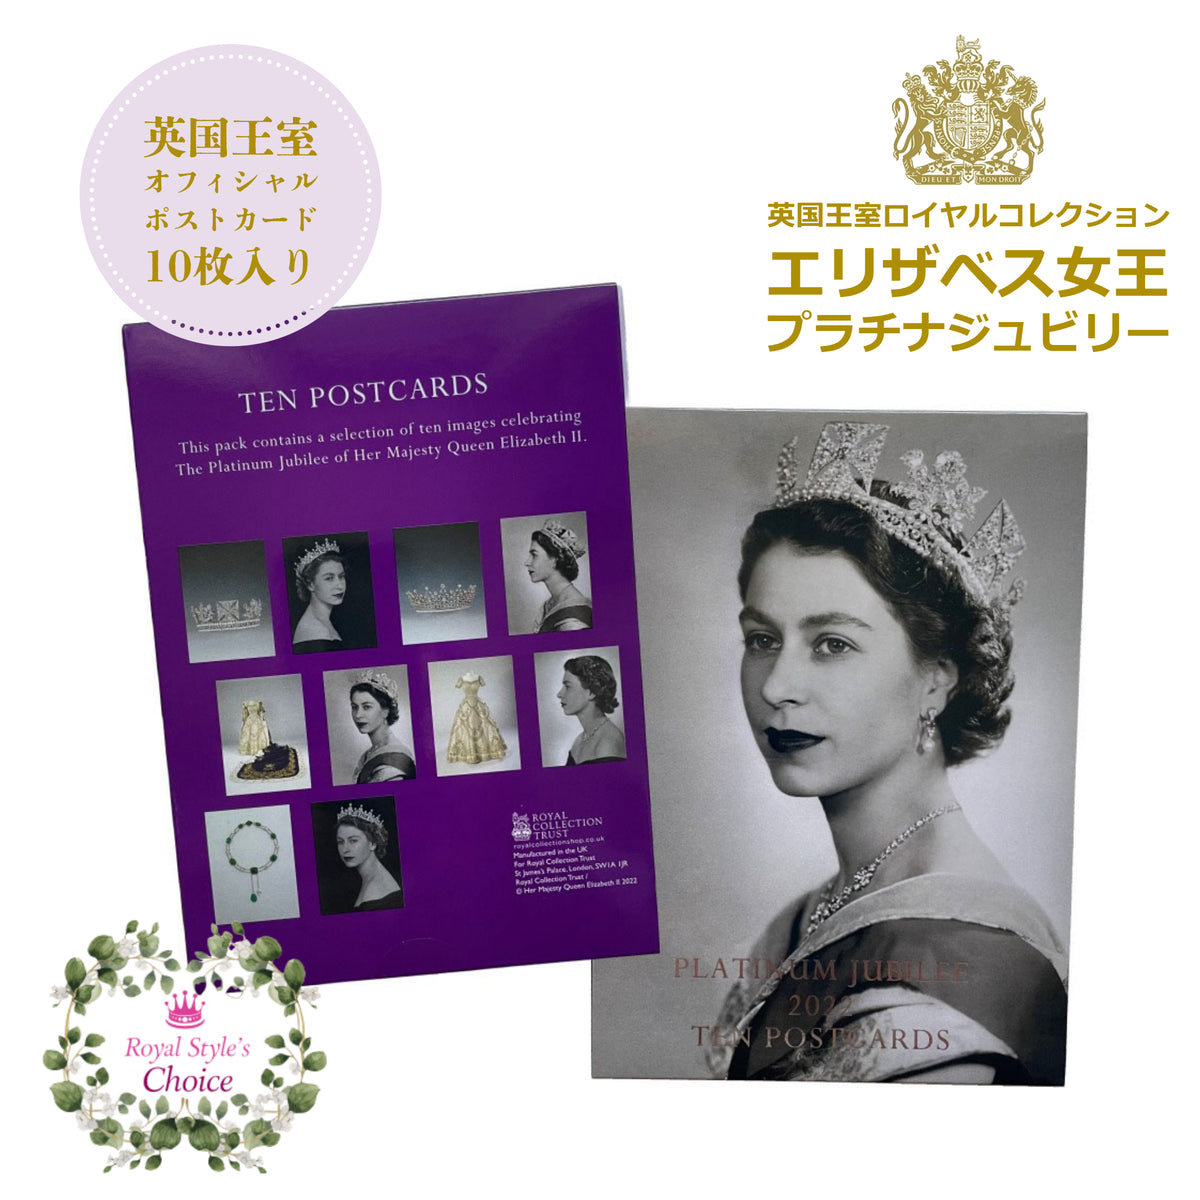 カタログ 【プラチナジュビリー】エリザベス女王 記念アルバム＆公式 